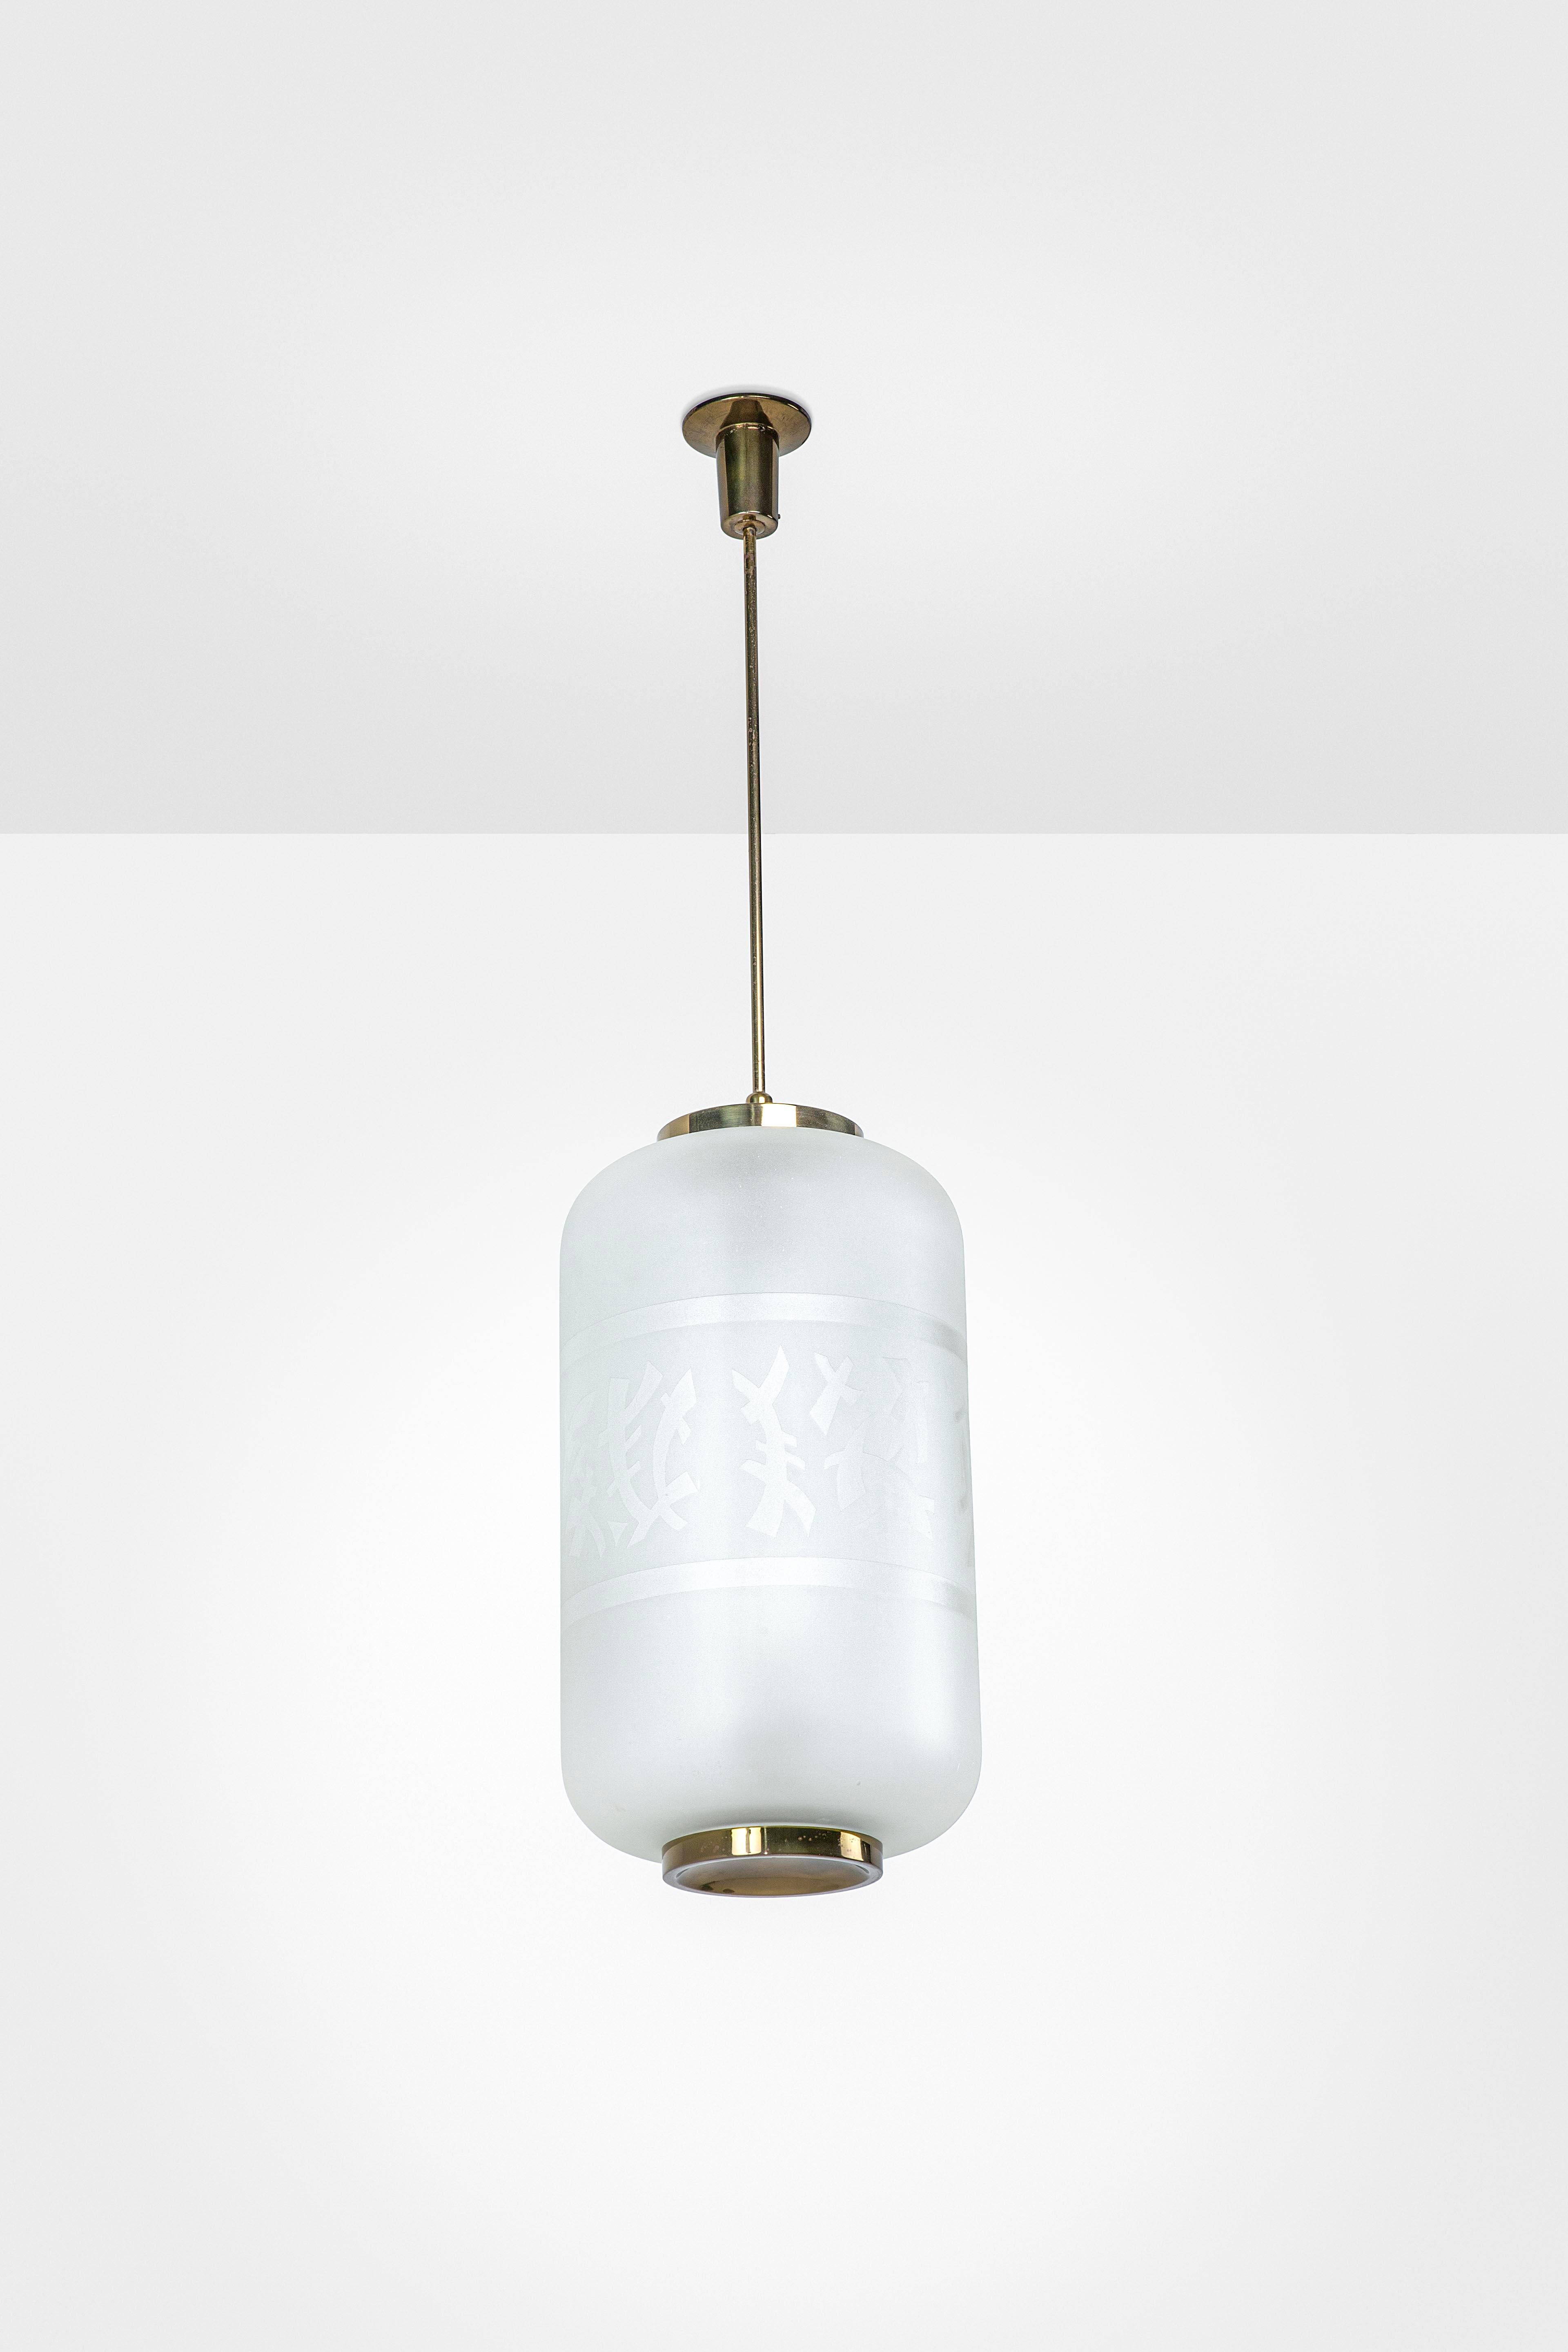 Angelo Lelii a créé des éléments d'éclairage exceptionnels, et cette lampe suspendue mod. 12724 fait partie de ces icônes qui sont entrées dans l'imaginaire des années 50. La structure est en laiton et le diffuseur est en verre dépoli et corrodé à